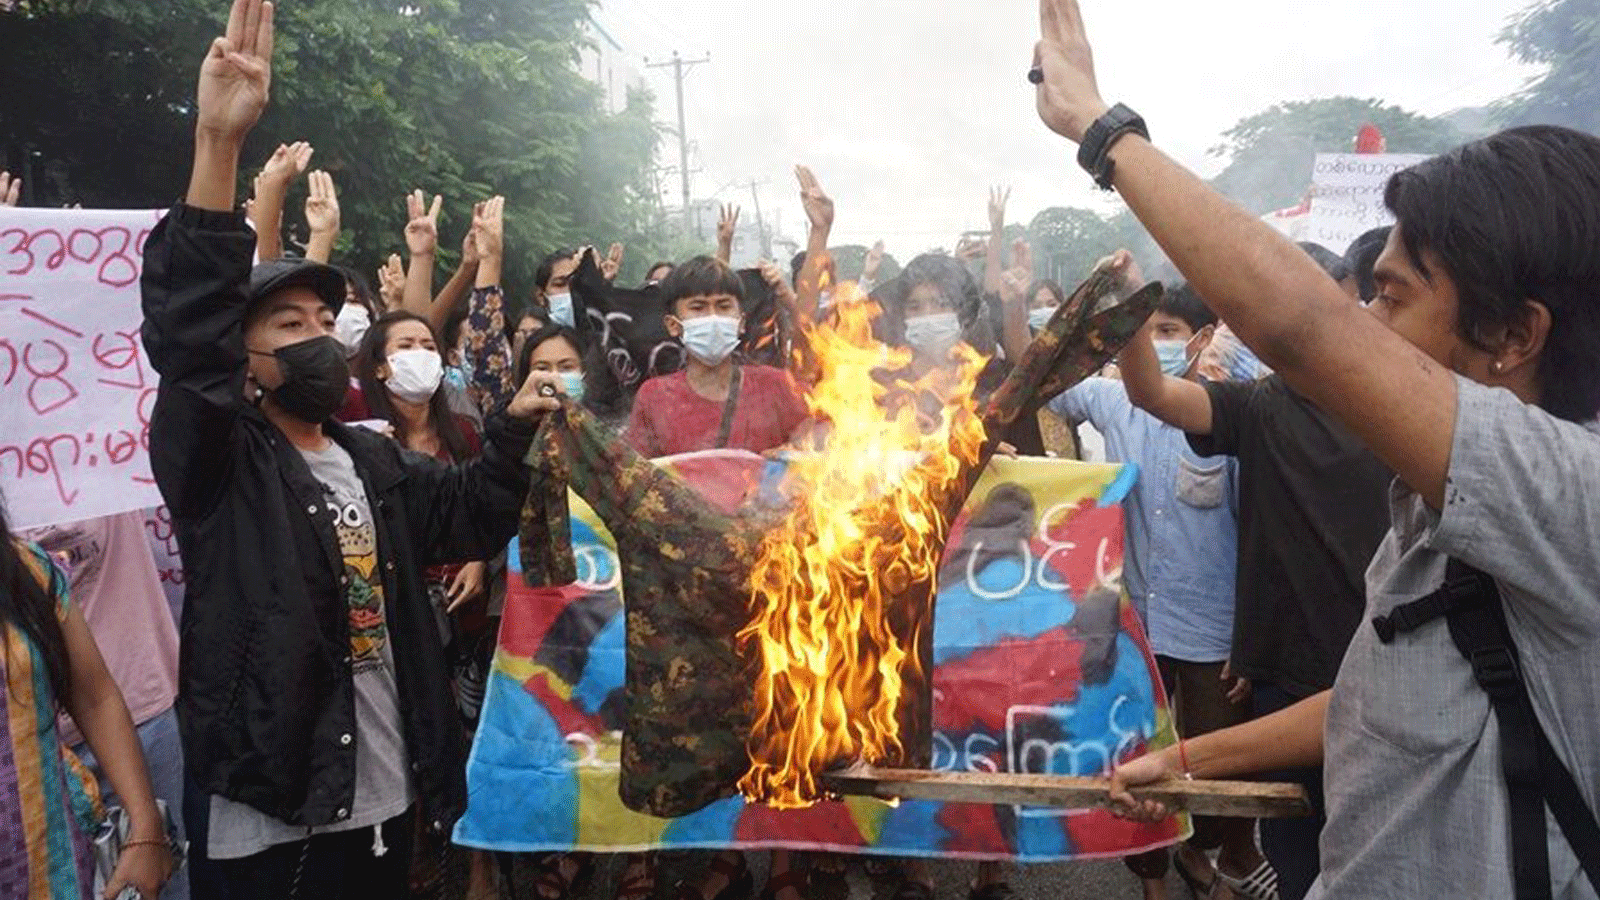 صورة تم التقاطها في 1 تموز/يوليو 2021 لمتظاهرين يحرقون زياً عسكرياً أثناء مشاركتهم في مظاهرة ضد الانقلاب العسكري في يانغون.